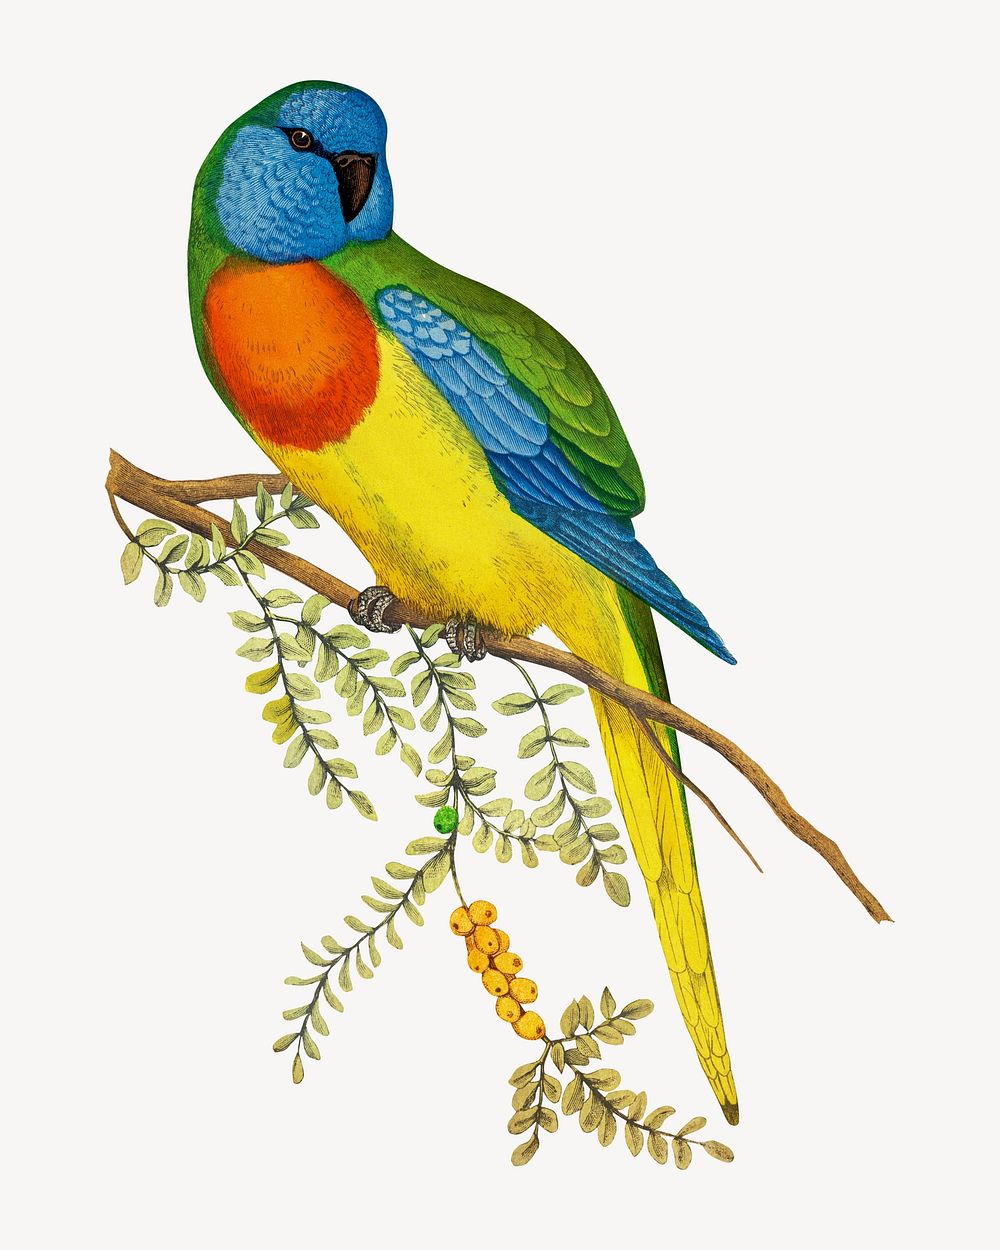 Splendid parakeet vintage bird illustration. Remixed by rawpixel.